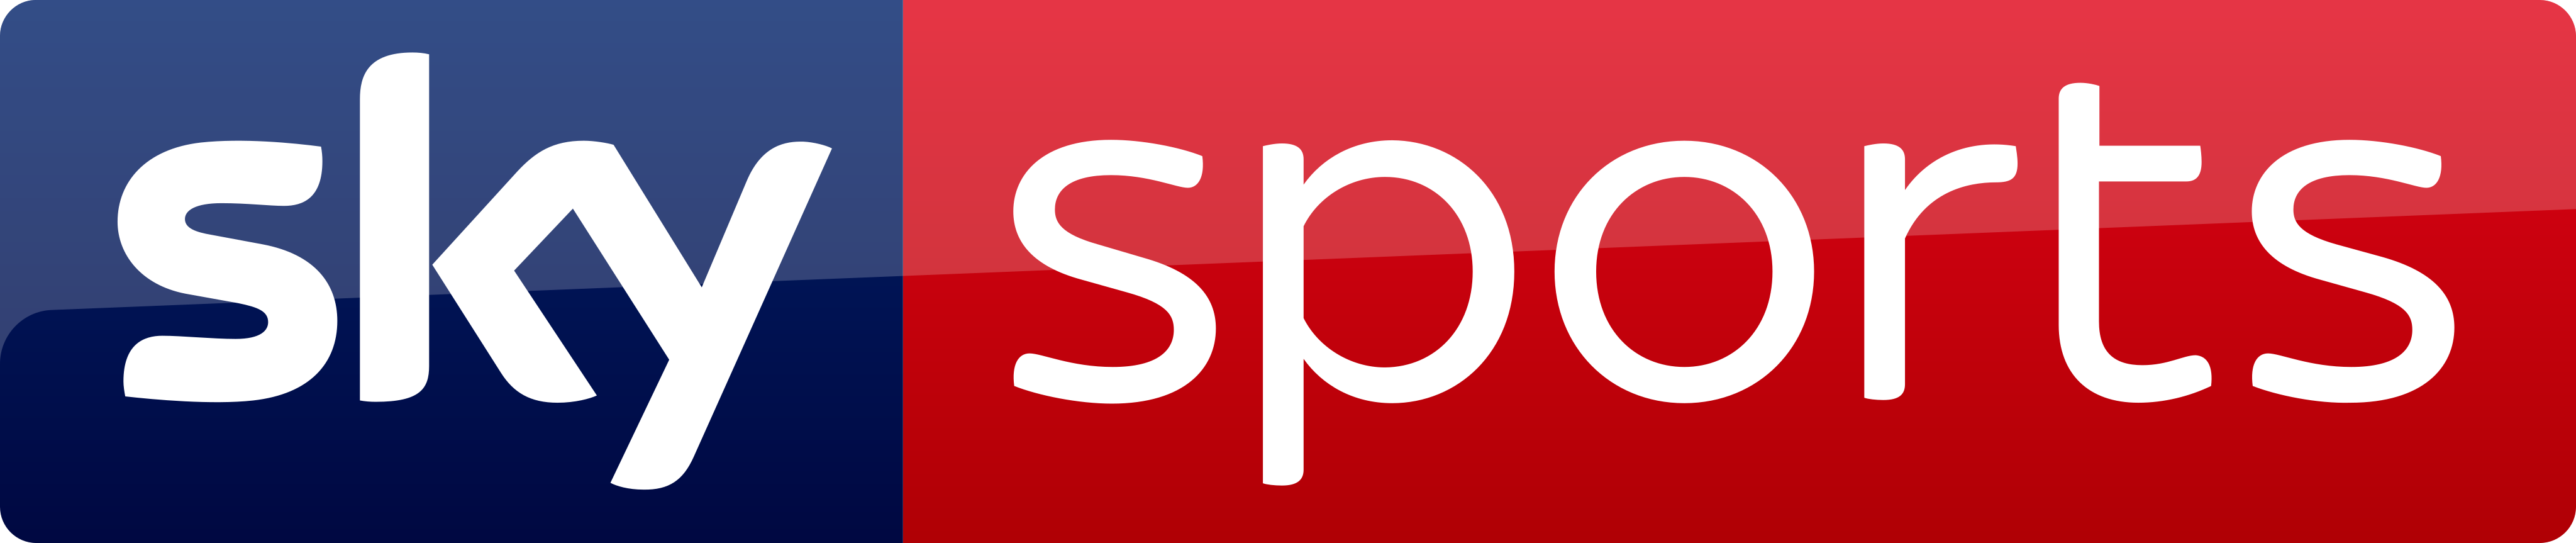 Sky-sports-logo